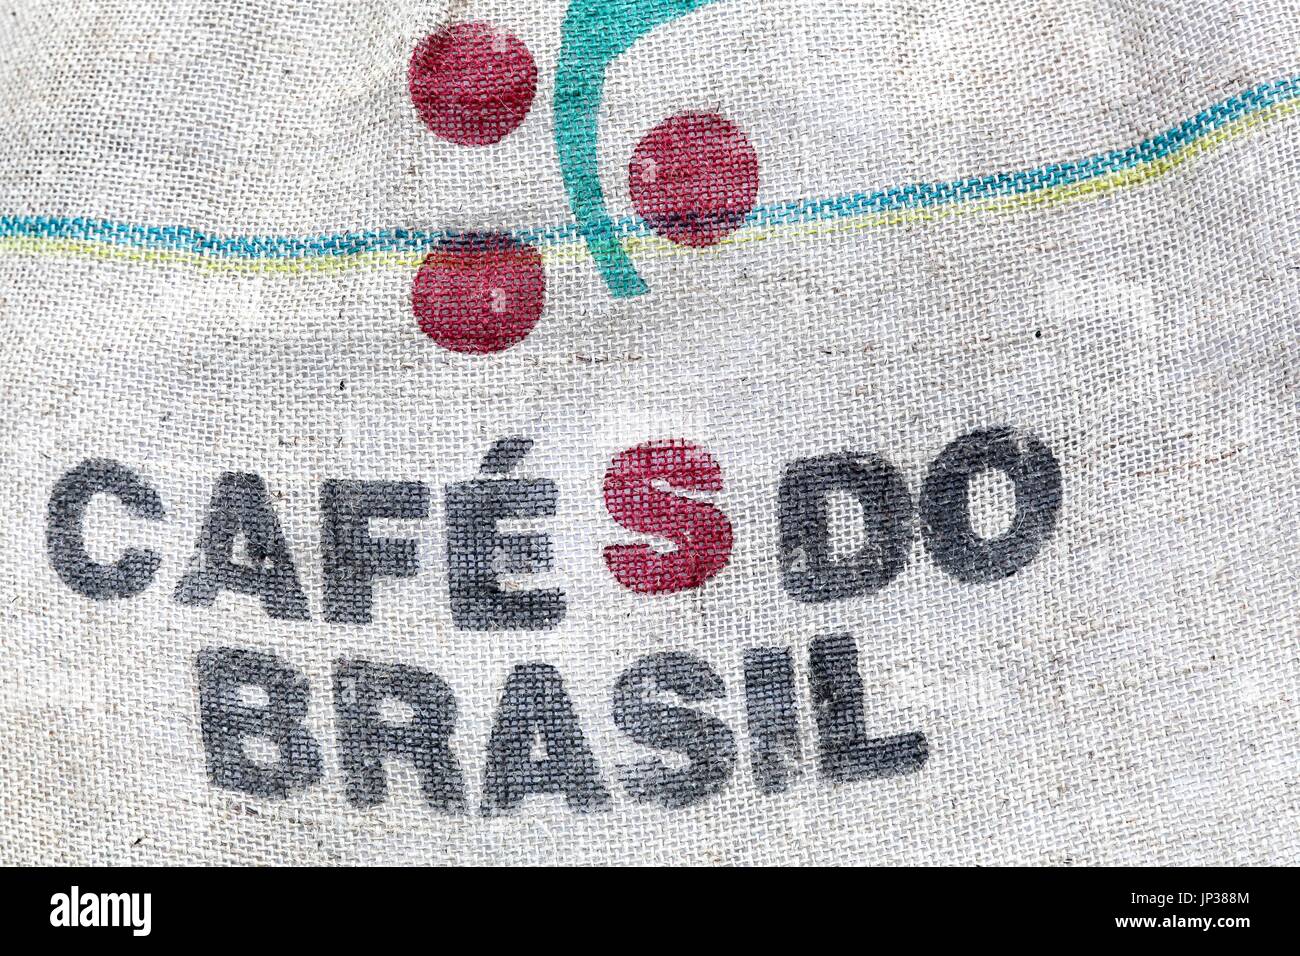 Cafe do Brasil on a bag Stock Photo